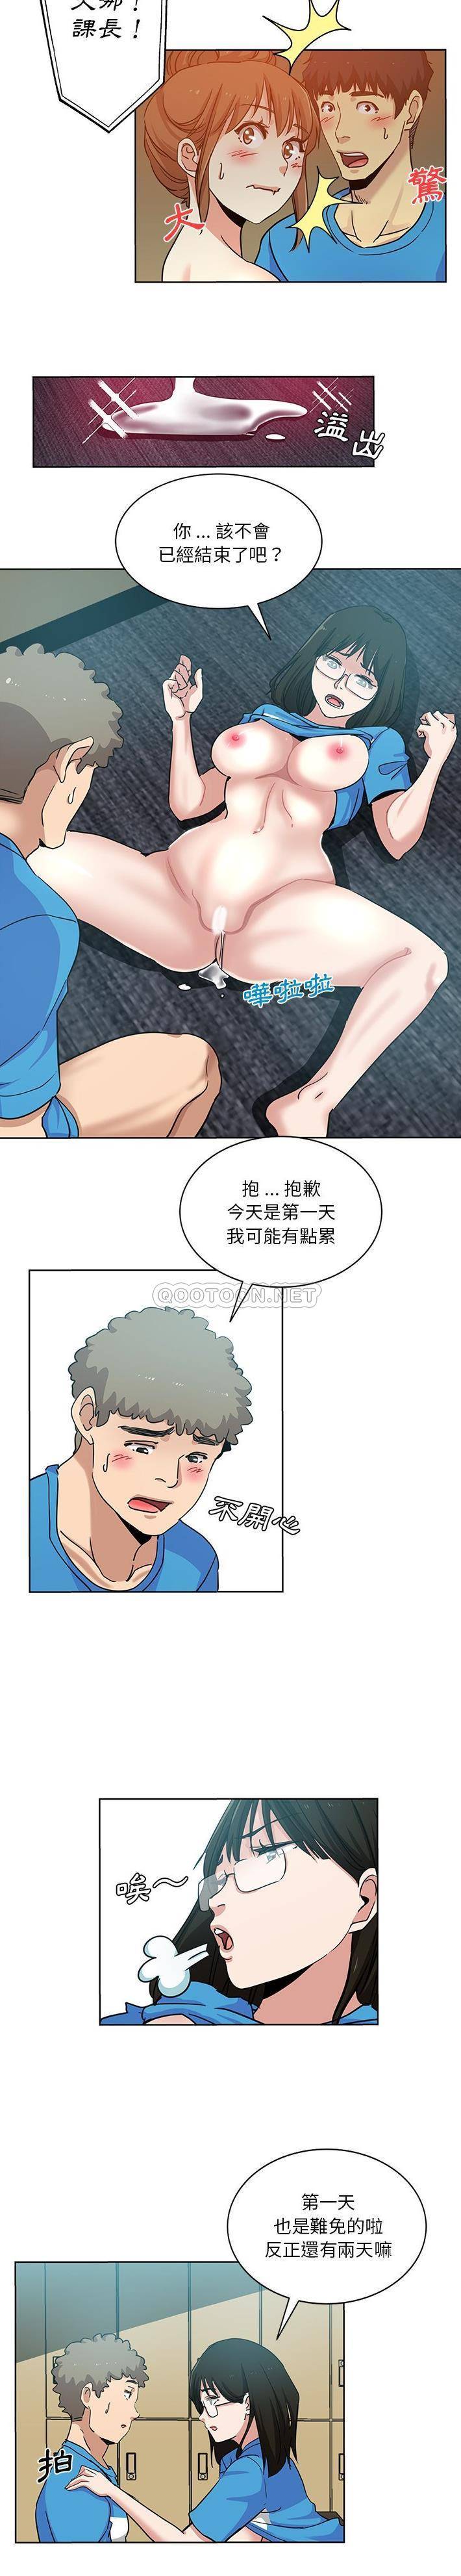 韩国污漫画 危險純友誼 第19话 7